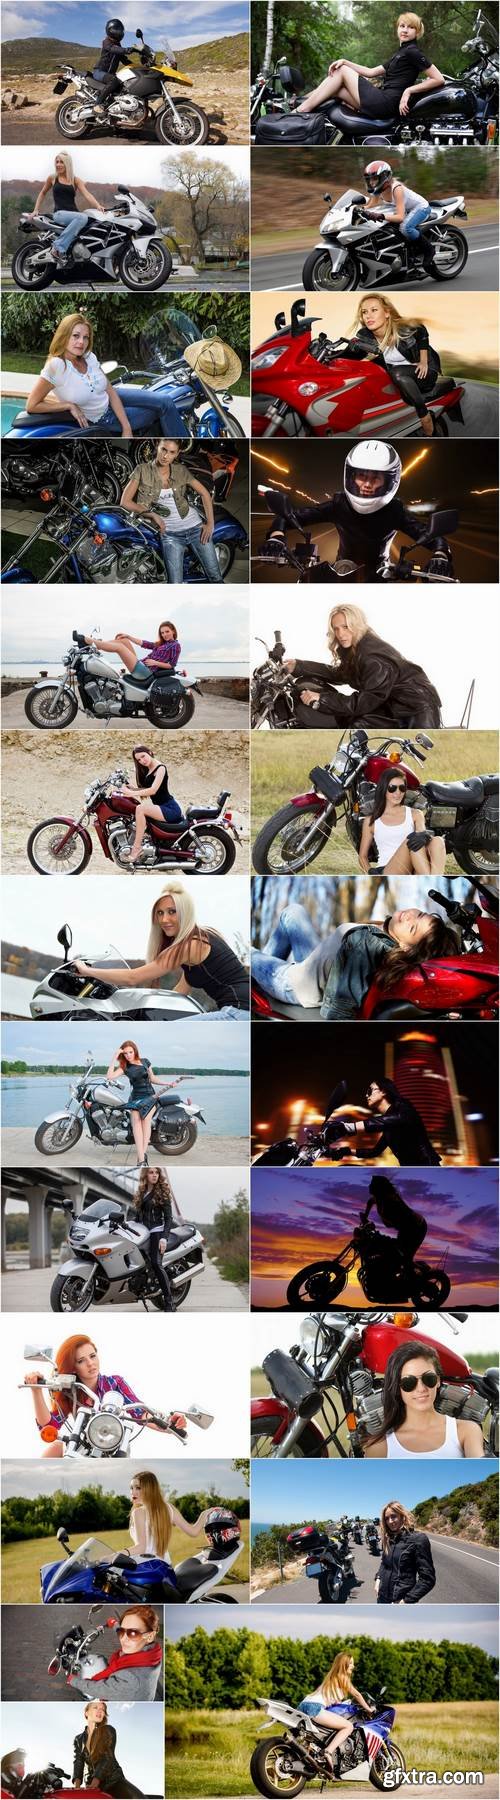 Woman woman on a motorcycle sportbike chopper enduro 25 HQ Jpeg